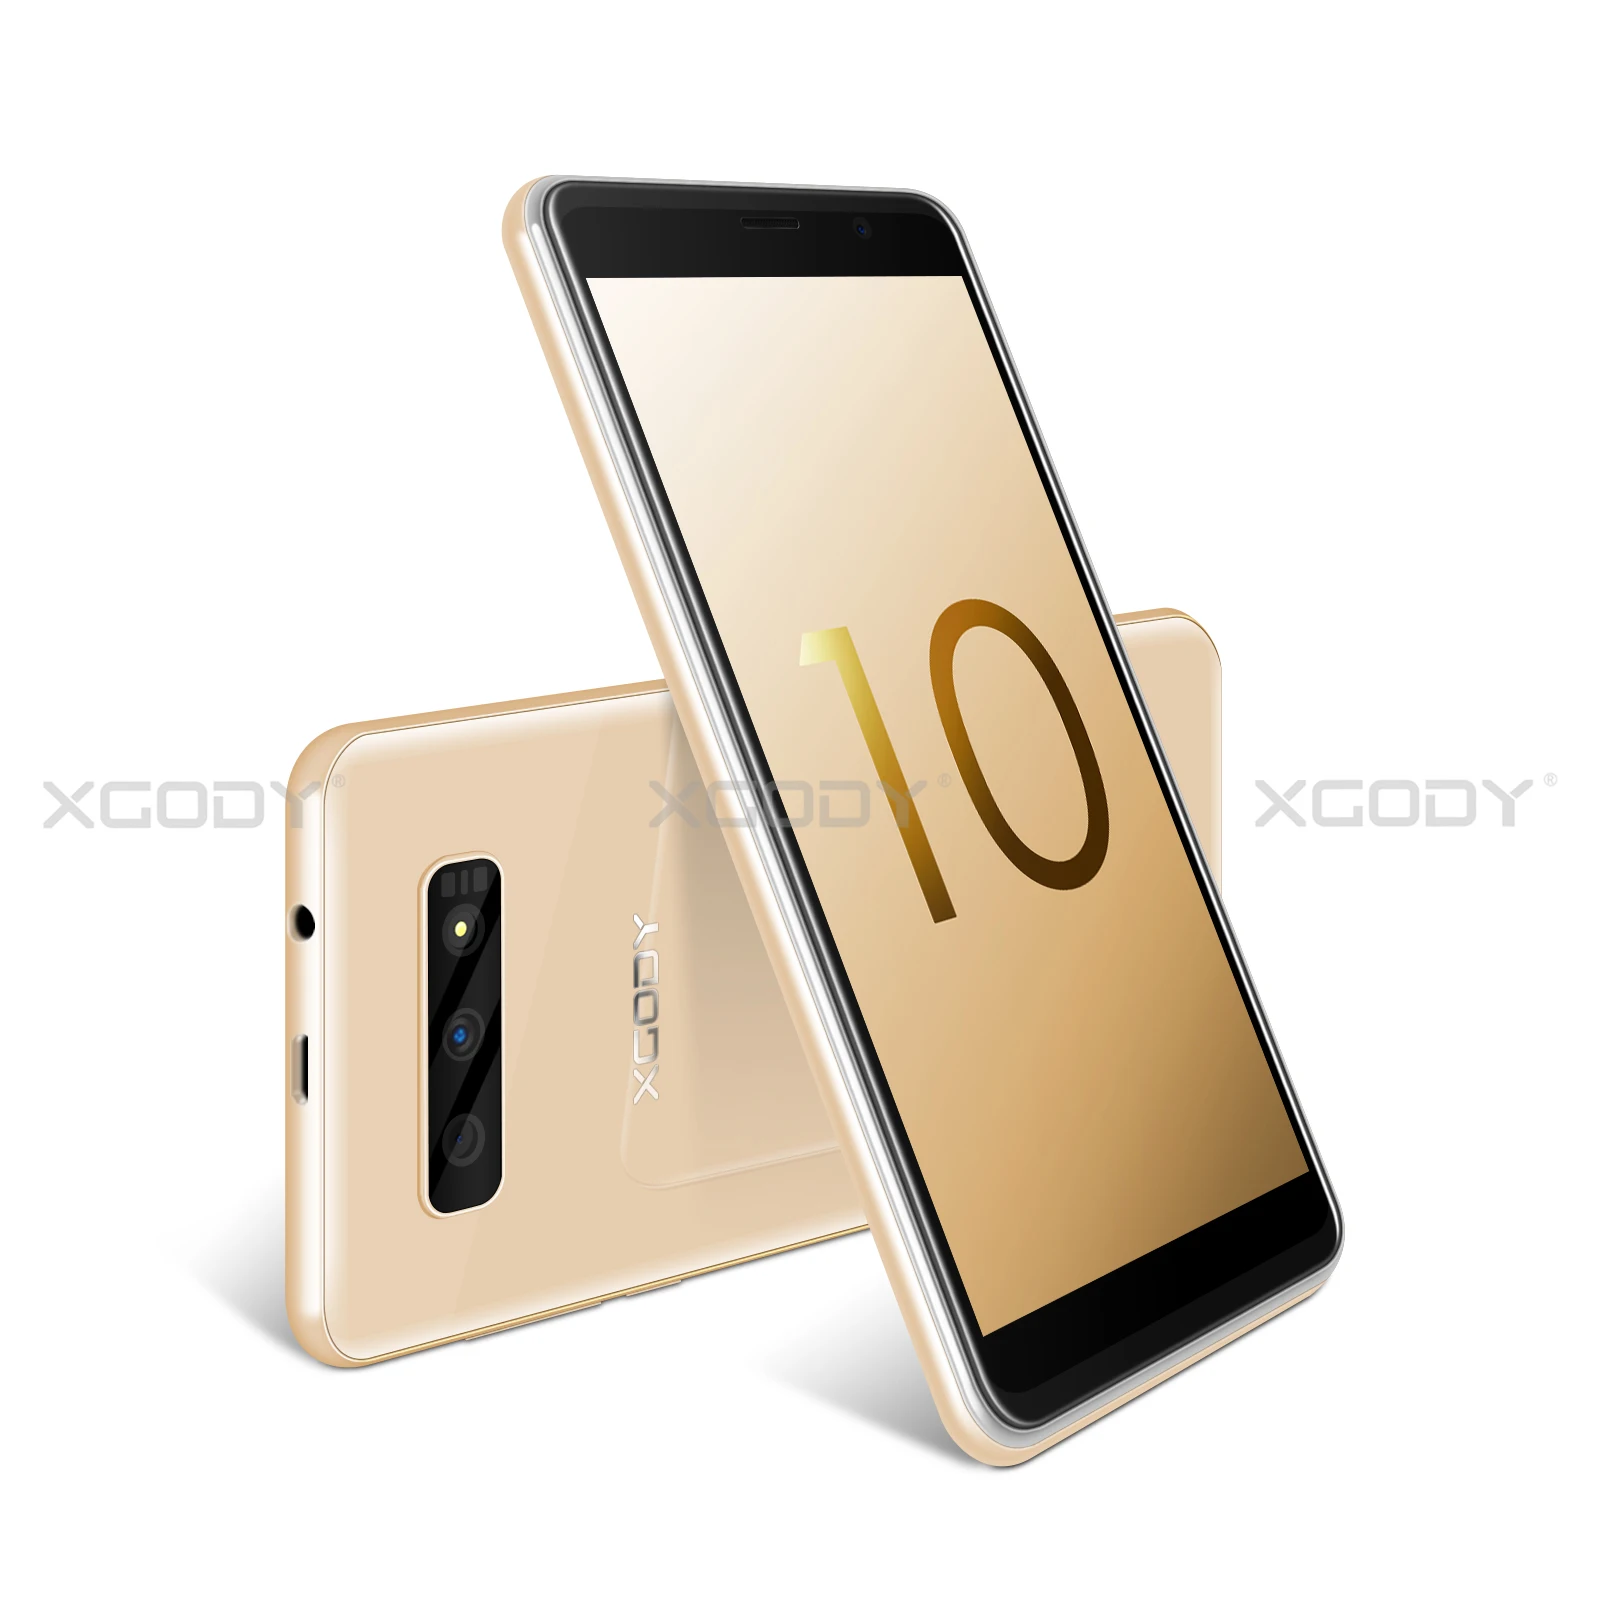 XGODY 5,5 дюймов 3G мобильный телефон 18:9 ОЗУ 2 Гб ПЗУ 16 Гб MT6580 четырехъядерный двойная камера 2500 мАч Android 8,1 смартфон - Цвет: Gold